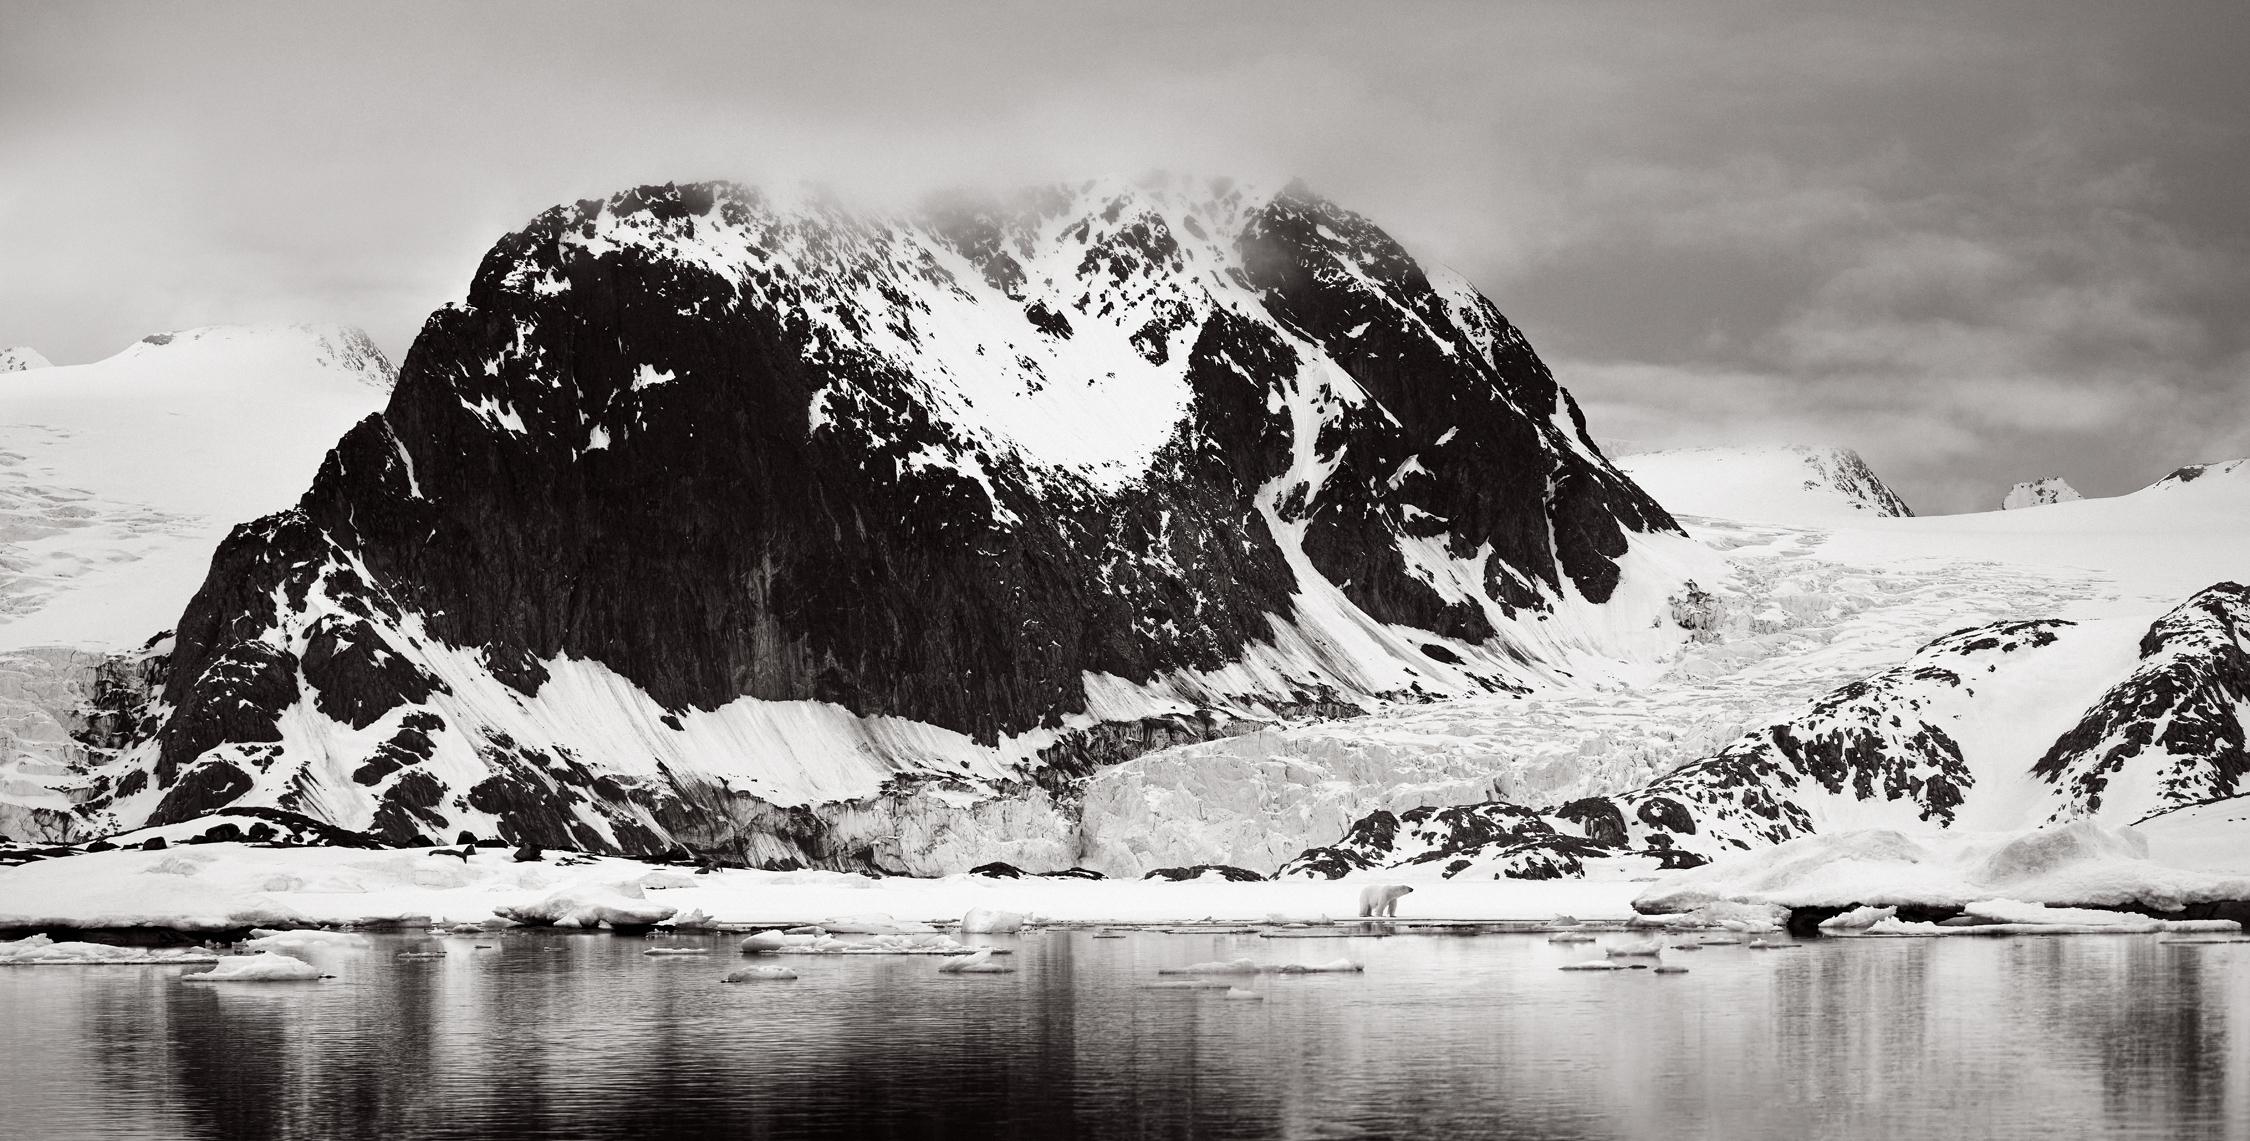 Drew Doggett Black and White Photograph – Ein einsamer Polarbär am Wasserrand, Surreal, Kinotisch